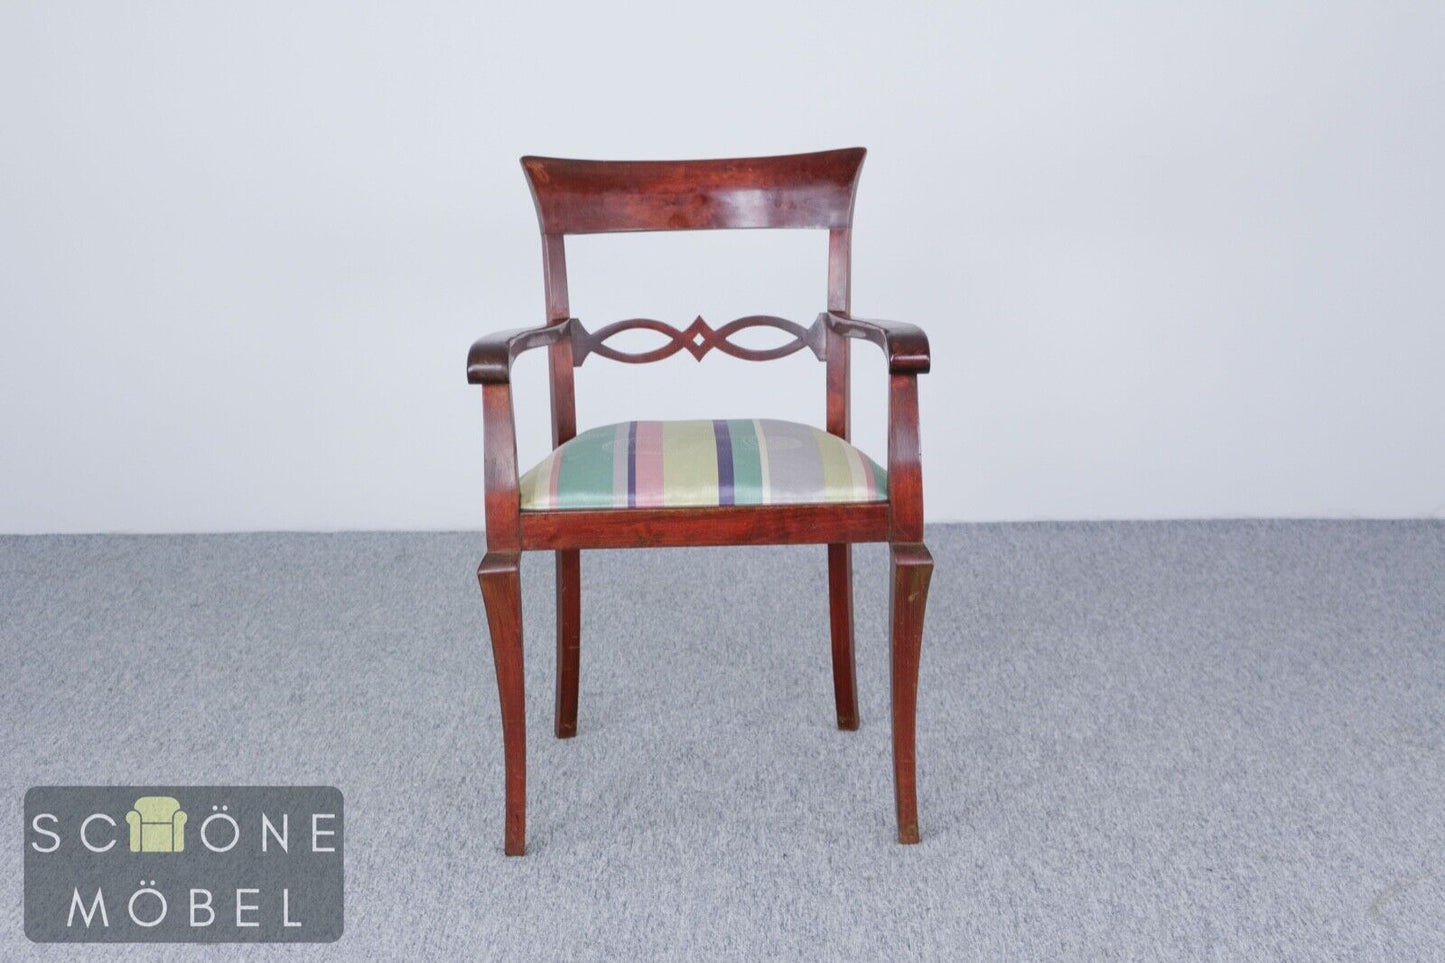 2x Biedermeier Esszimmerstühle Armlehnen Stühle Antik Stil Stuhl Essstuhl Chair